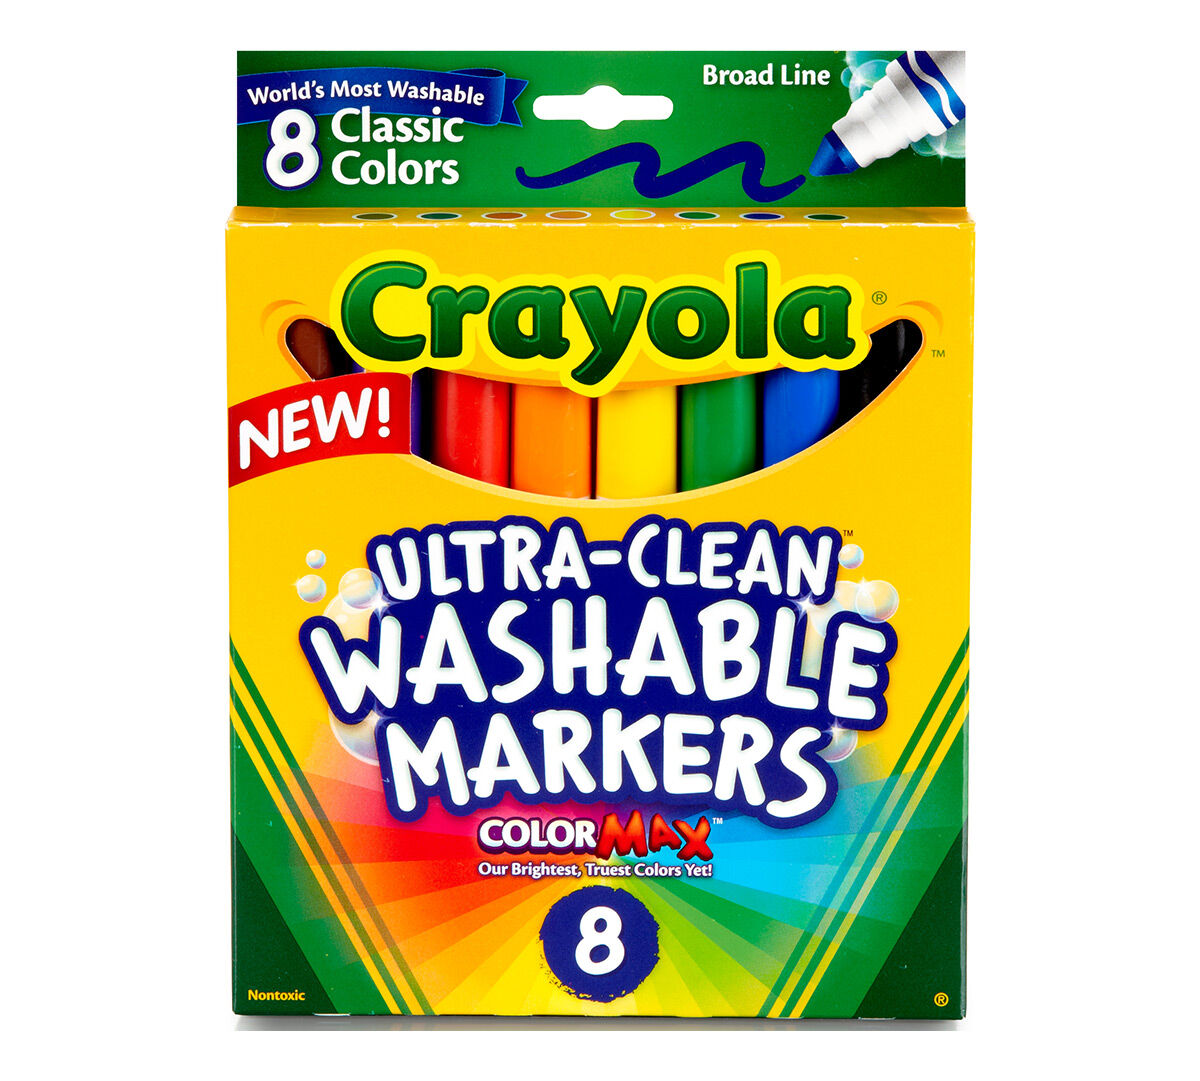 crayola washable markers